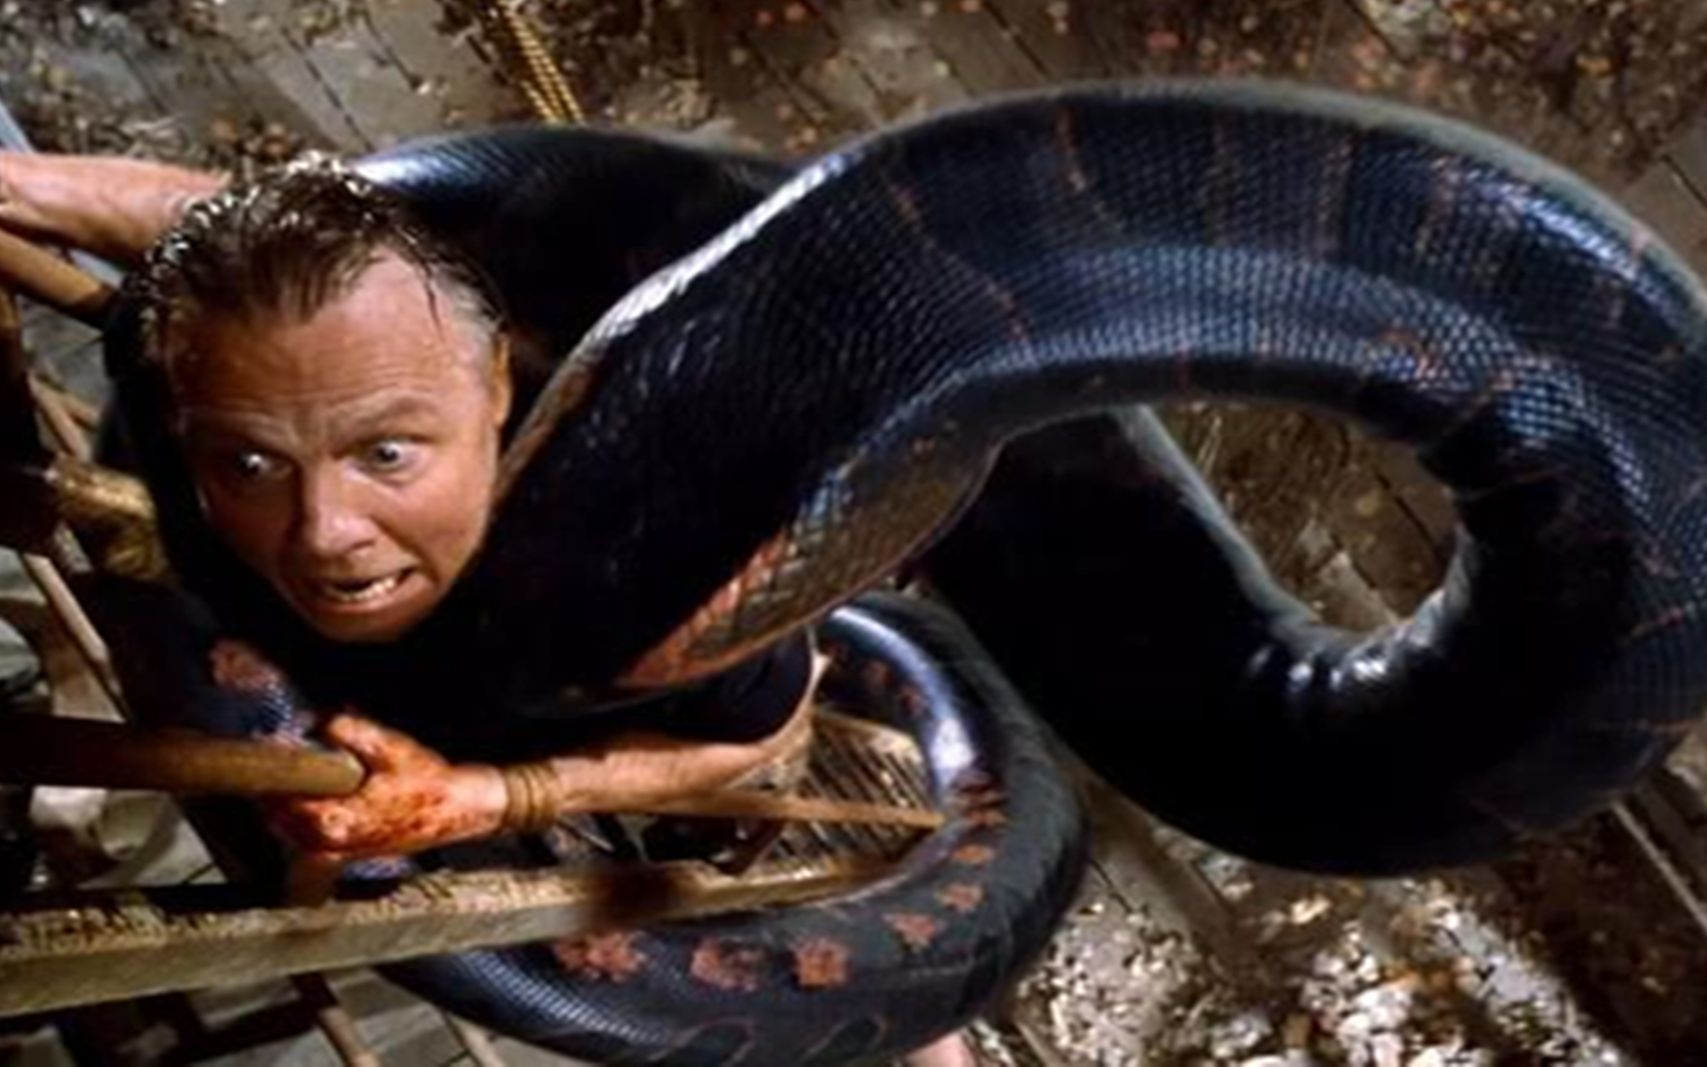 吓坏人的蟒蛇电影,童年阴影!巨蟒吞人画面成为经典